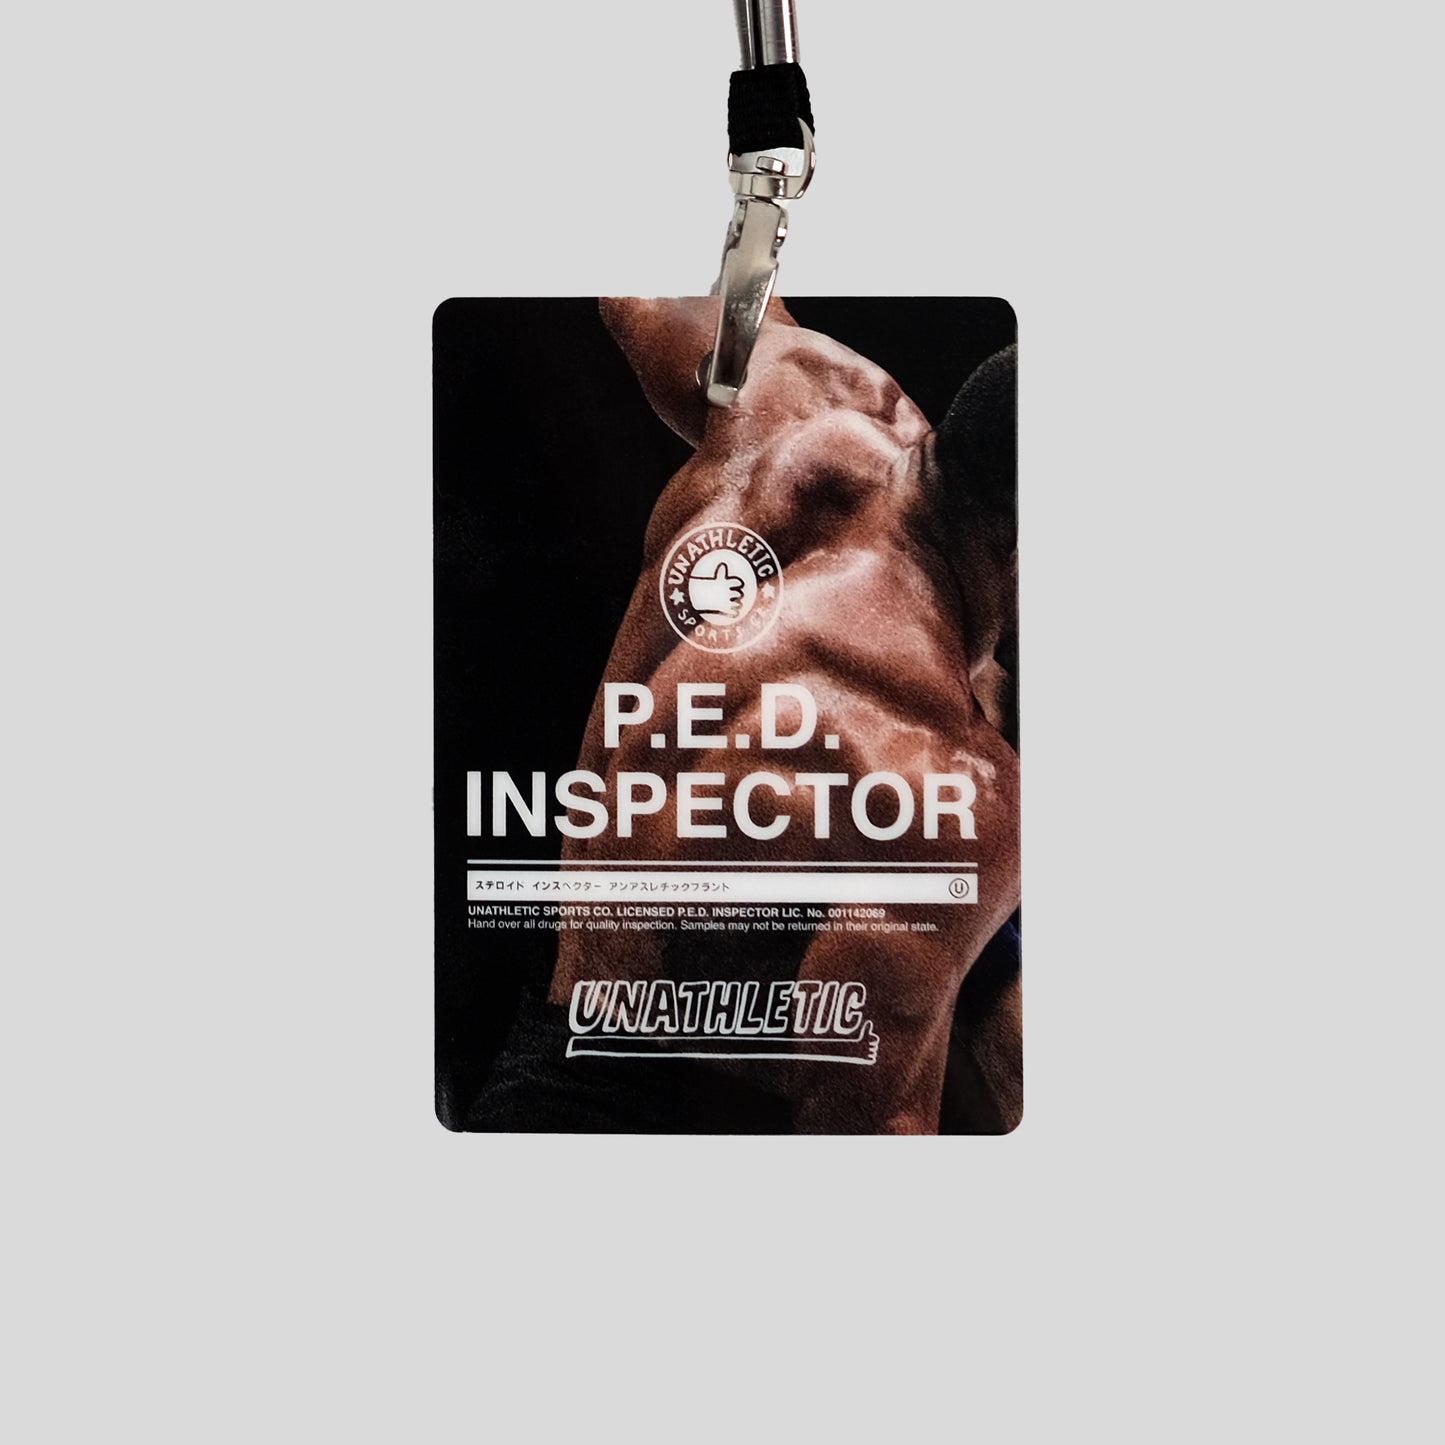 "P.E.D. Inspector" Tee